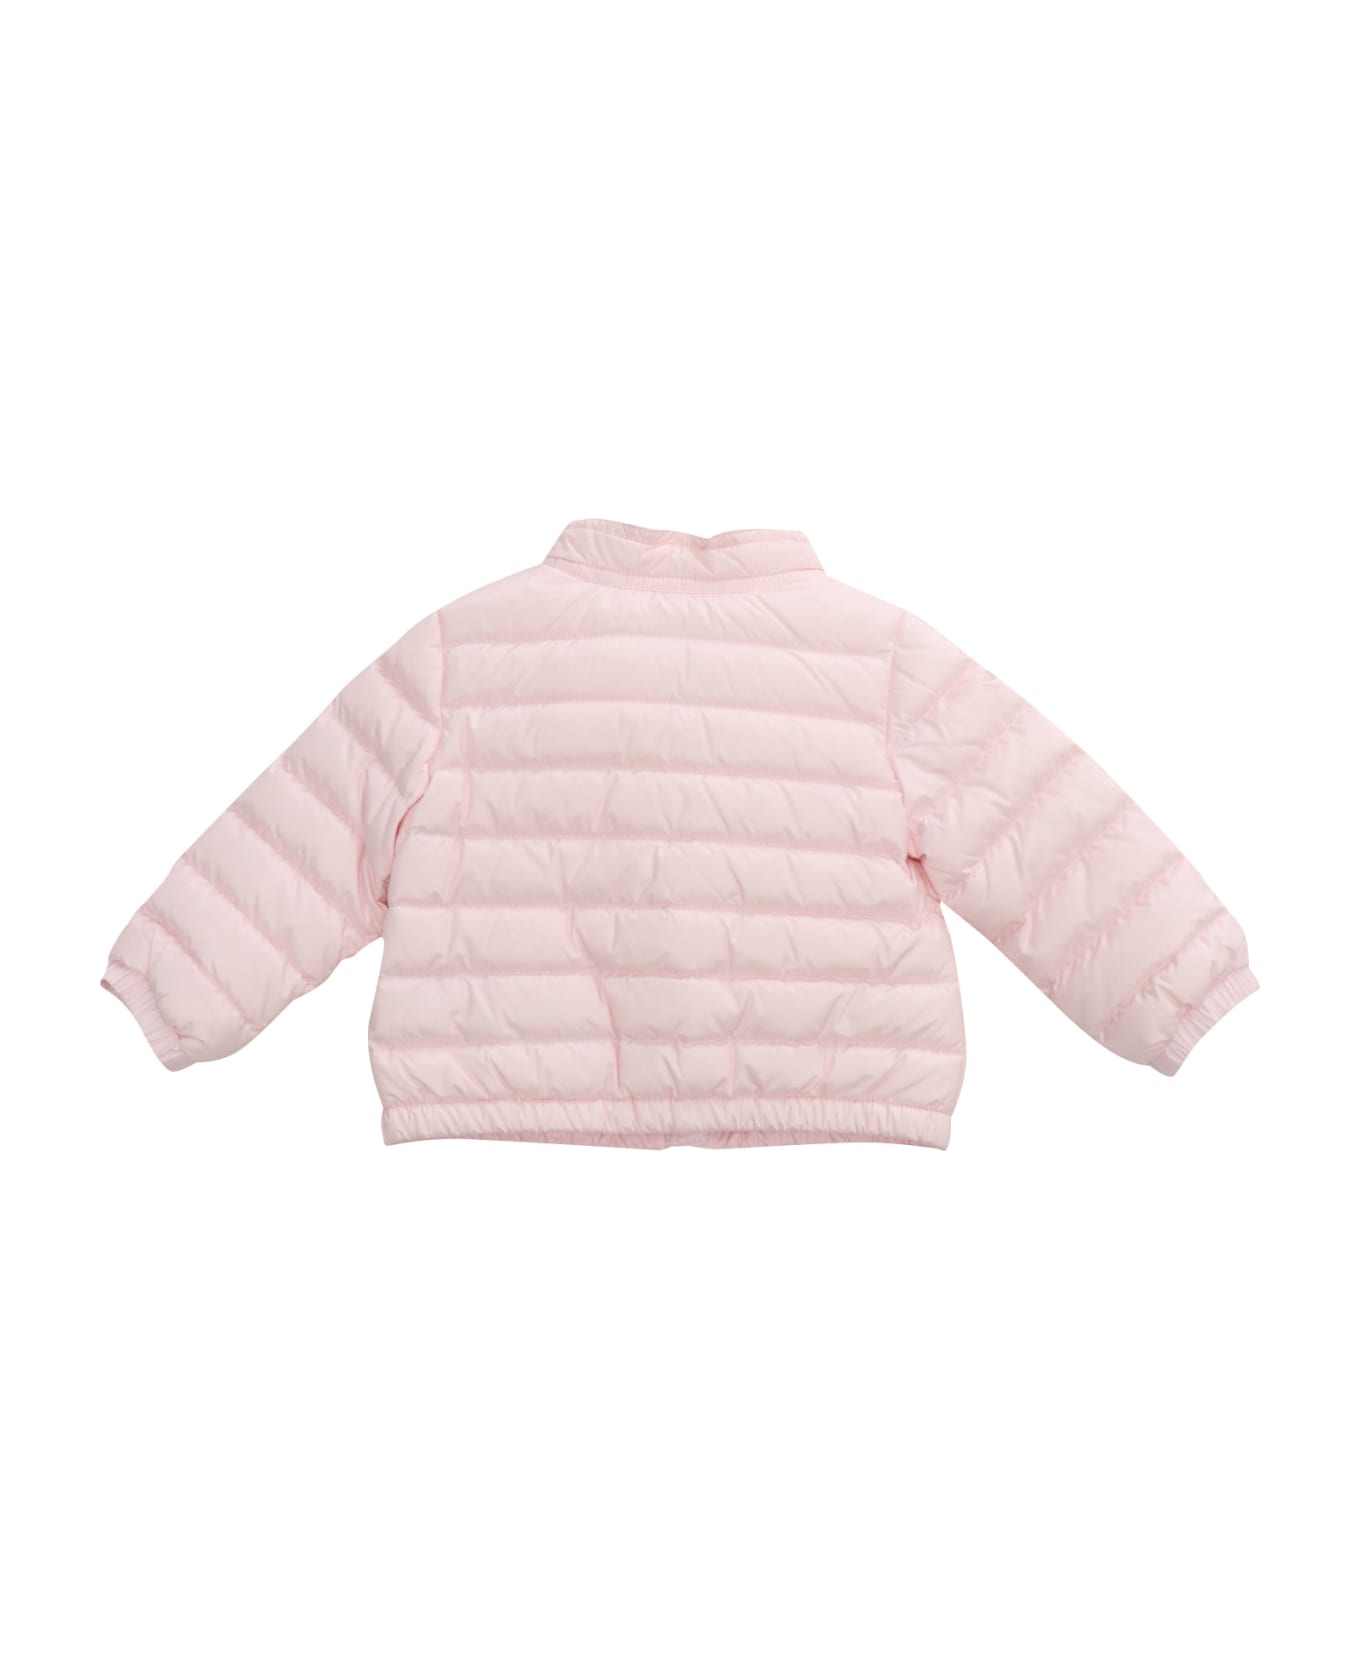 Moncler Pink Lans Jacket - PINK